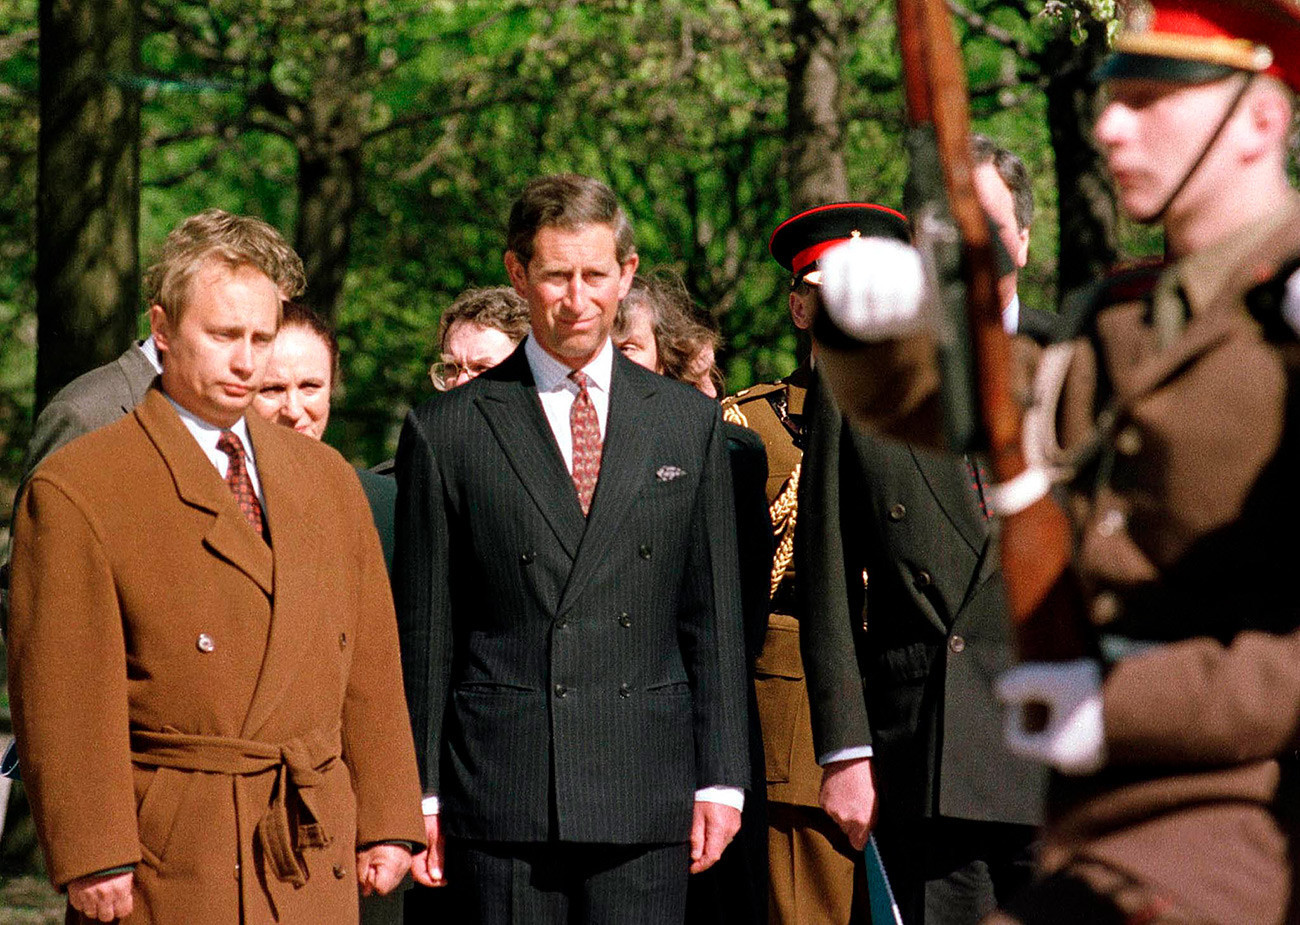 Владимир Путин (лево), кој тогаш бил задолжен за надворешните односи на Санкт Петербург кај градоначалникот Анатолиј Собчак, присуствува на церемонијата на полагање венци со принцот Чарлс на Пискарјовските гробишта во Санкт Петербург, Фотографијата е направена на 17 мај 1994 година.